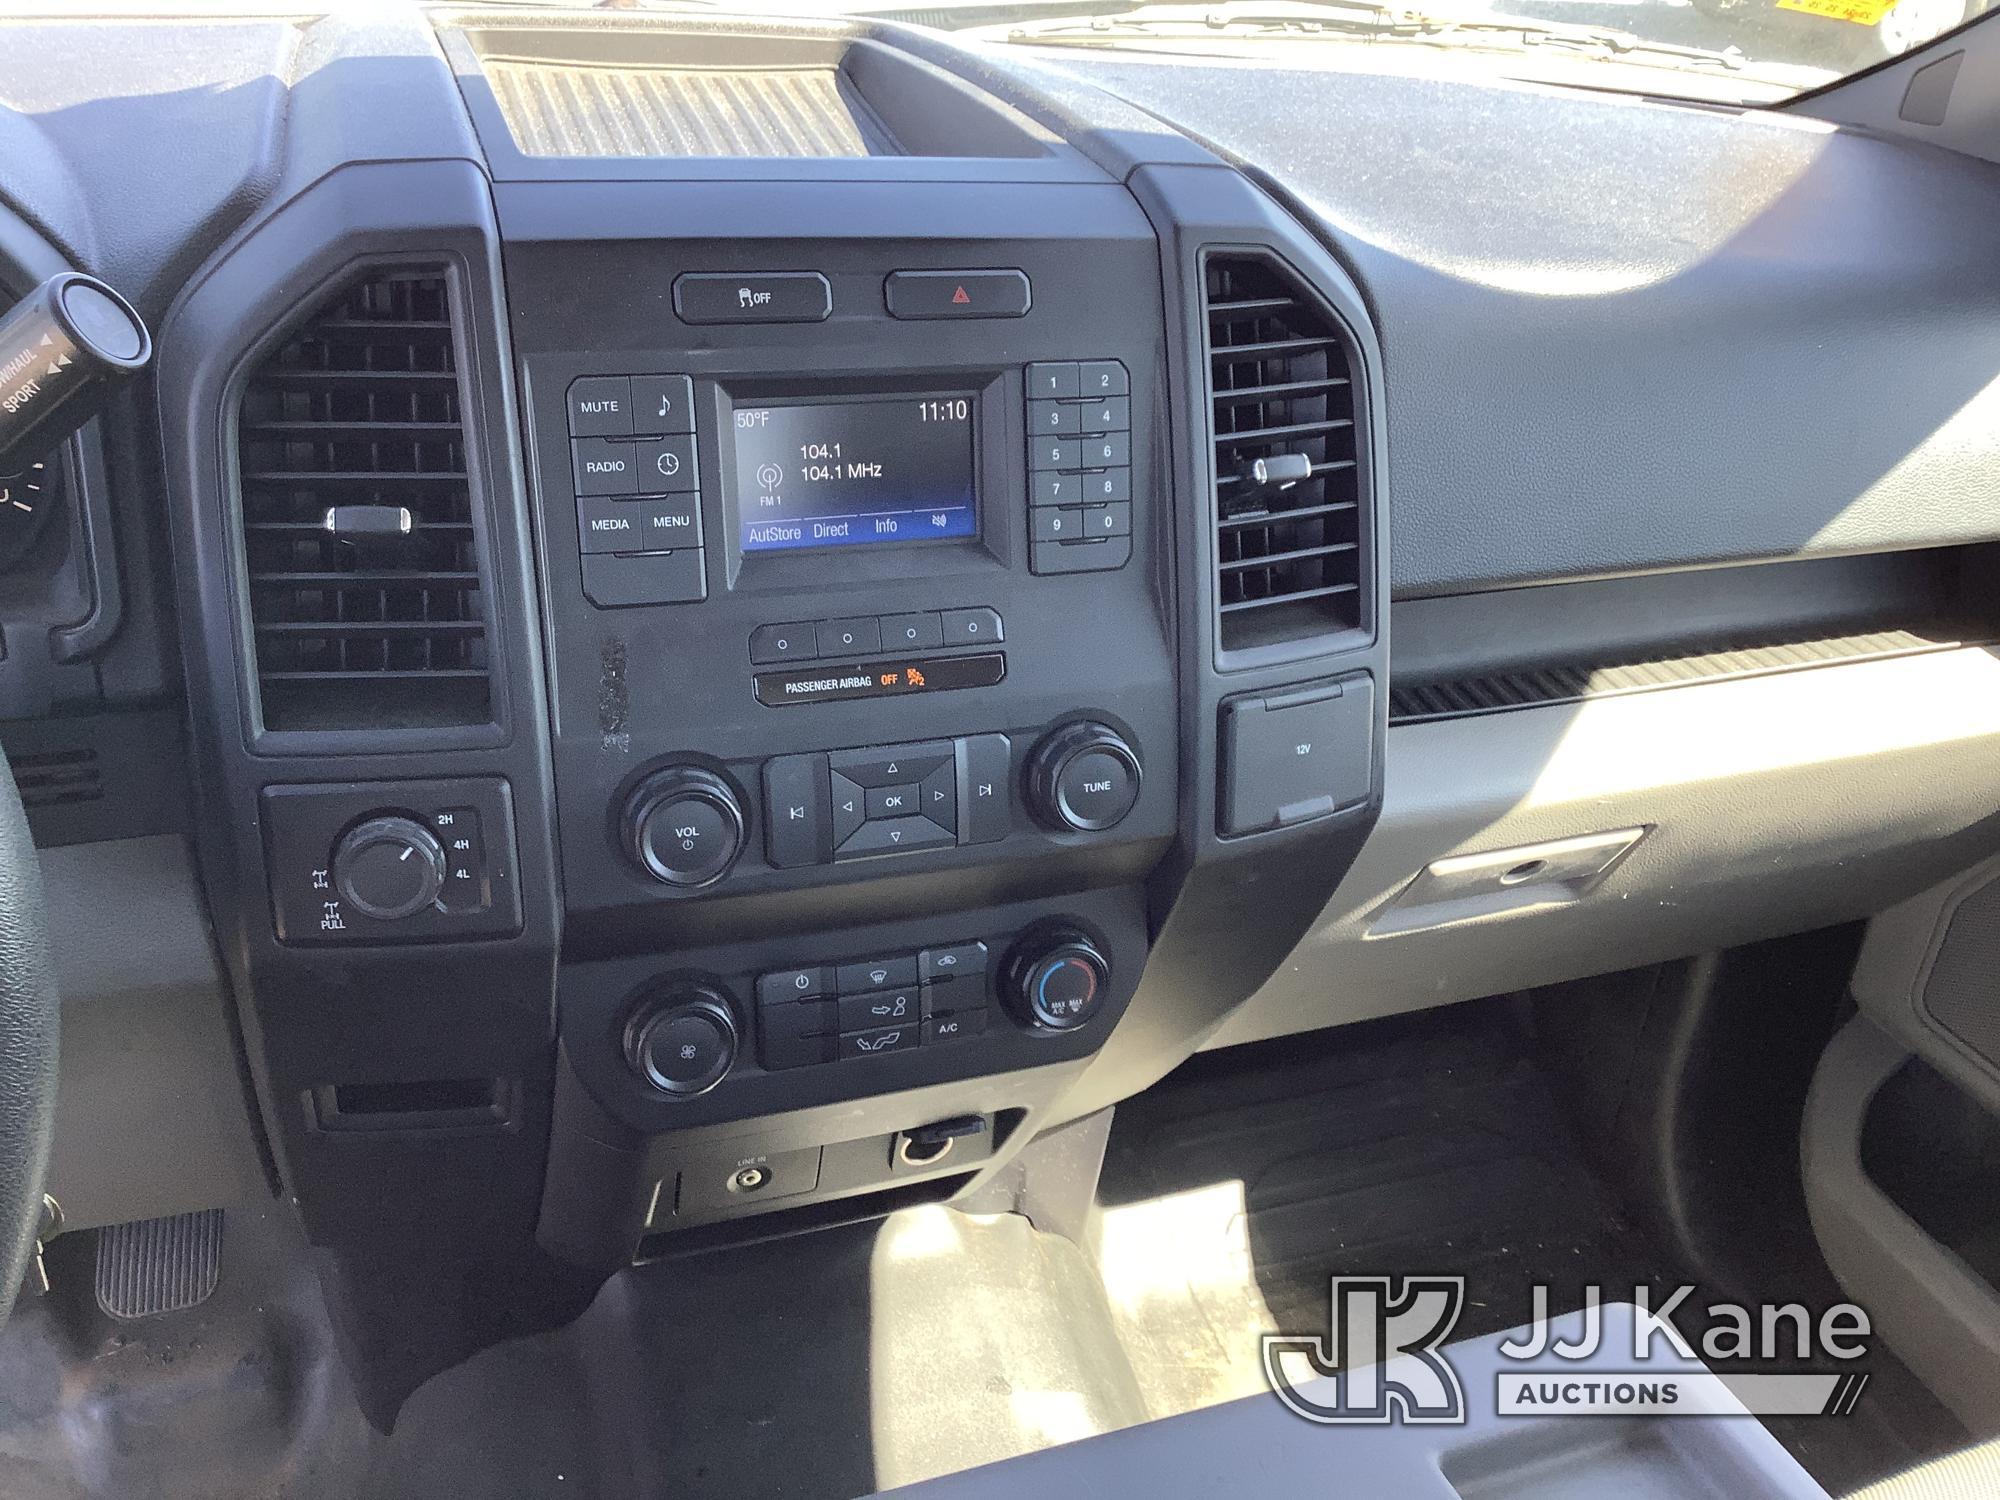 (Villa Rica, GA) 2015 Ford F150 4x4 Extended-Cab Pickup Truck Runs & Moves